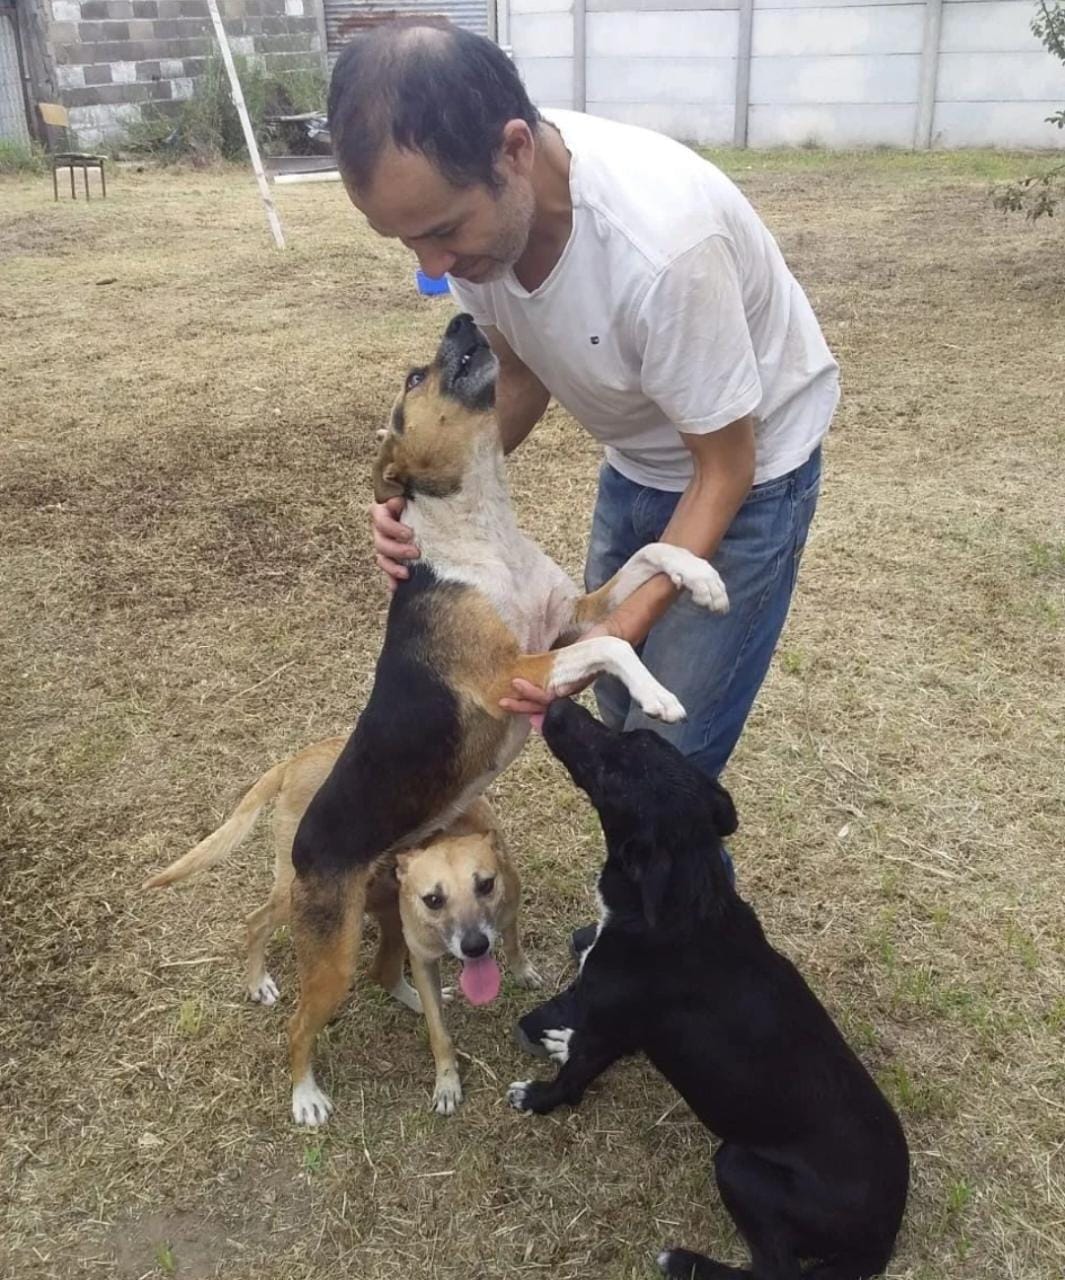 Una cadena solidaria recuperó a las mascotas de una familia y logró un reencuentro interprovincial